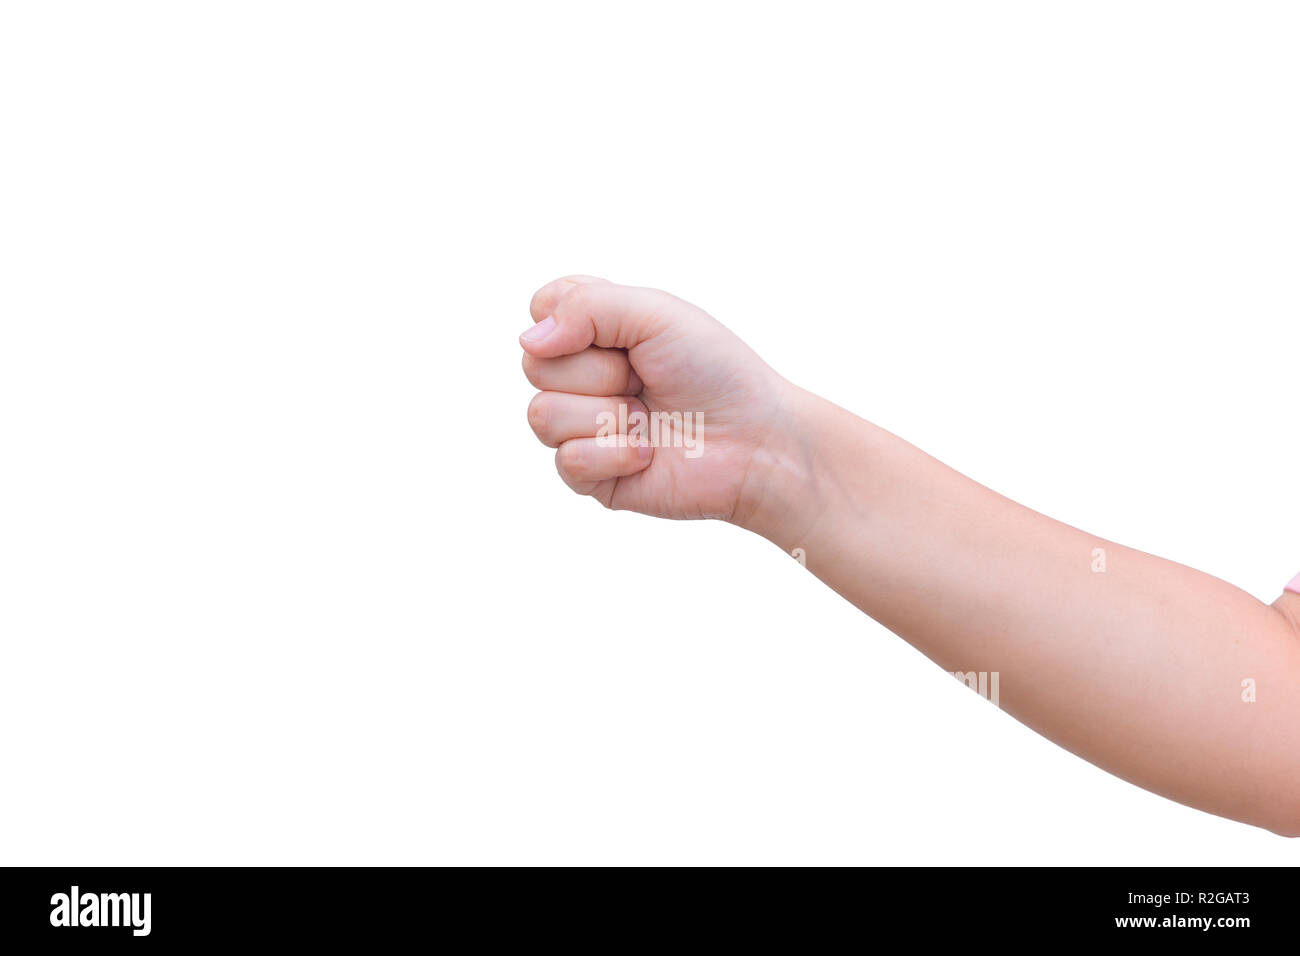 Ragazza mano grassa pugno isolato su sfondo bianco Foto Stock